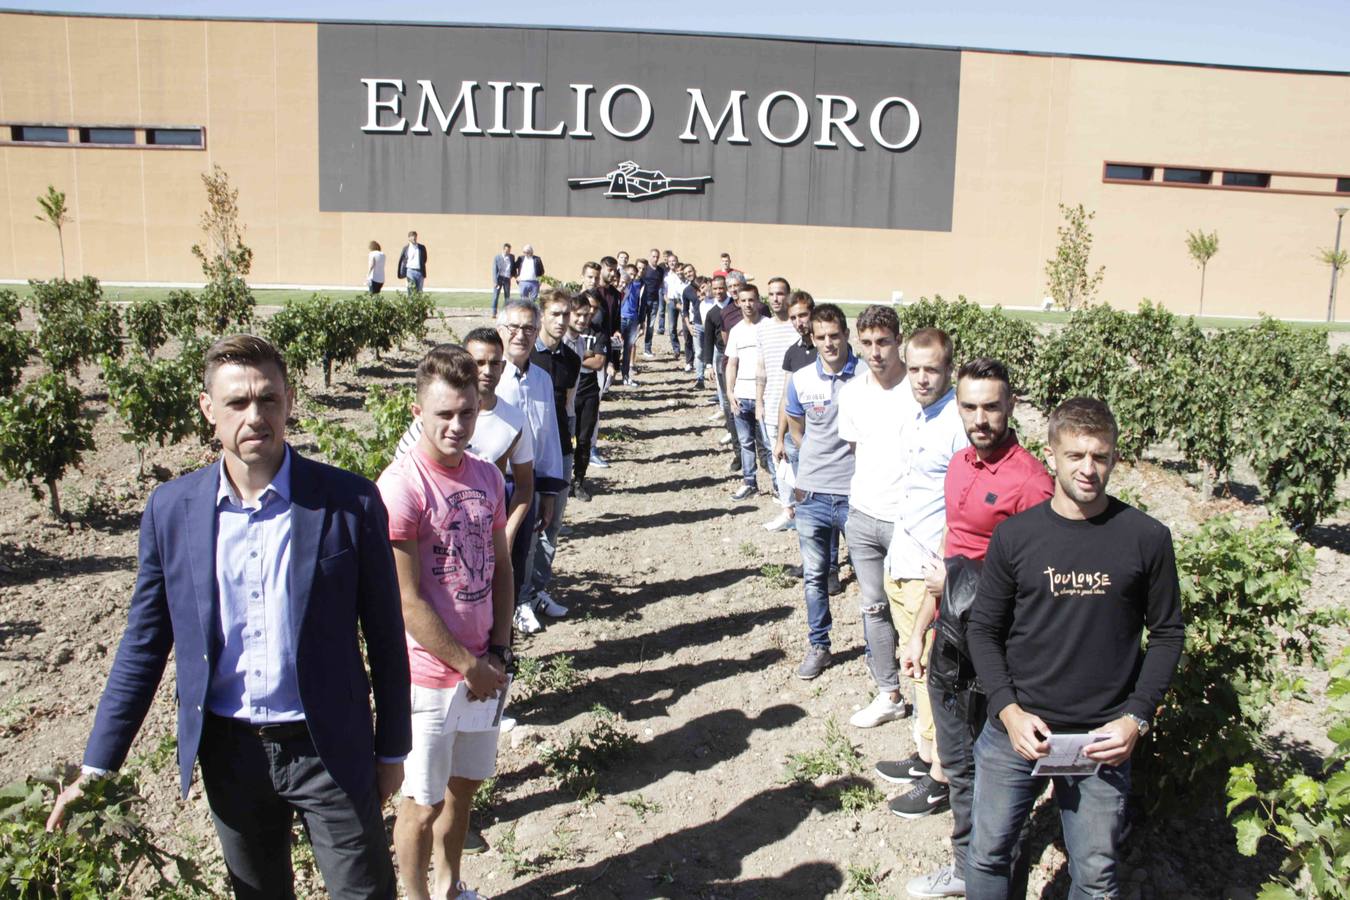 Los jugadores del Real Valladolid apadrinan una cepa solidaria en los viñedos de Emilio Moro